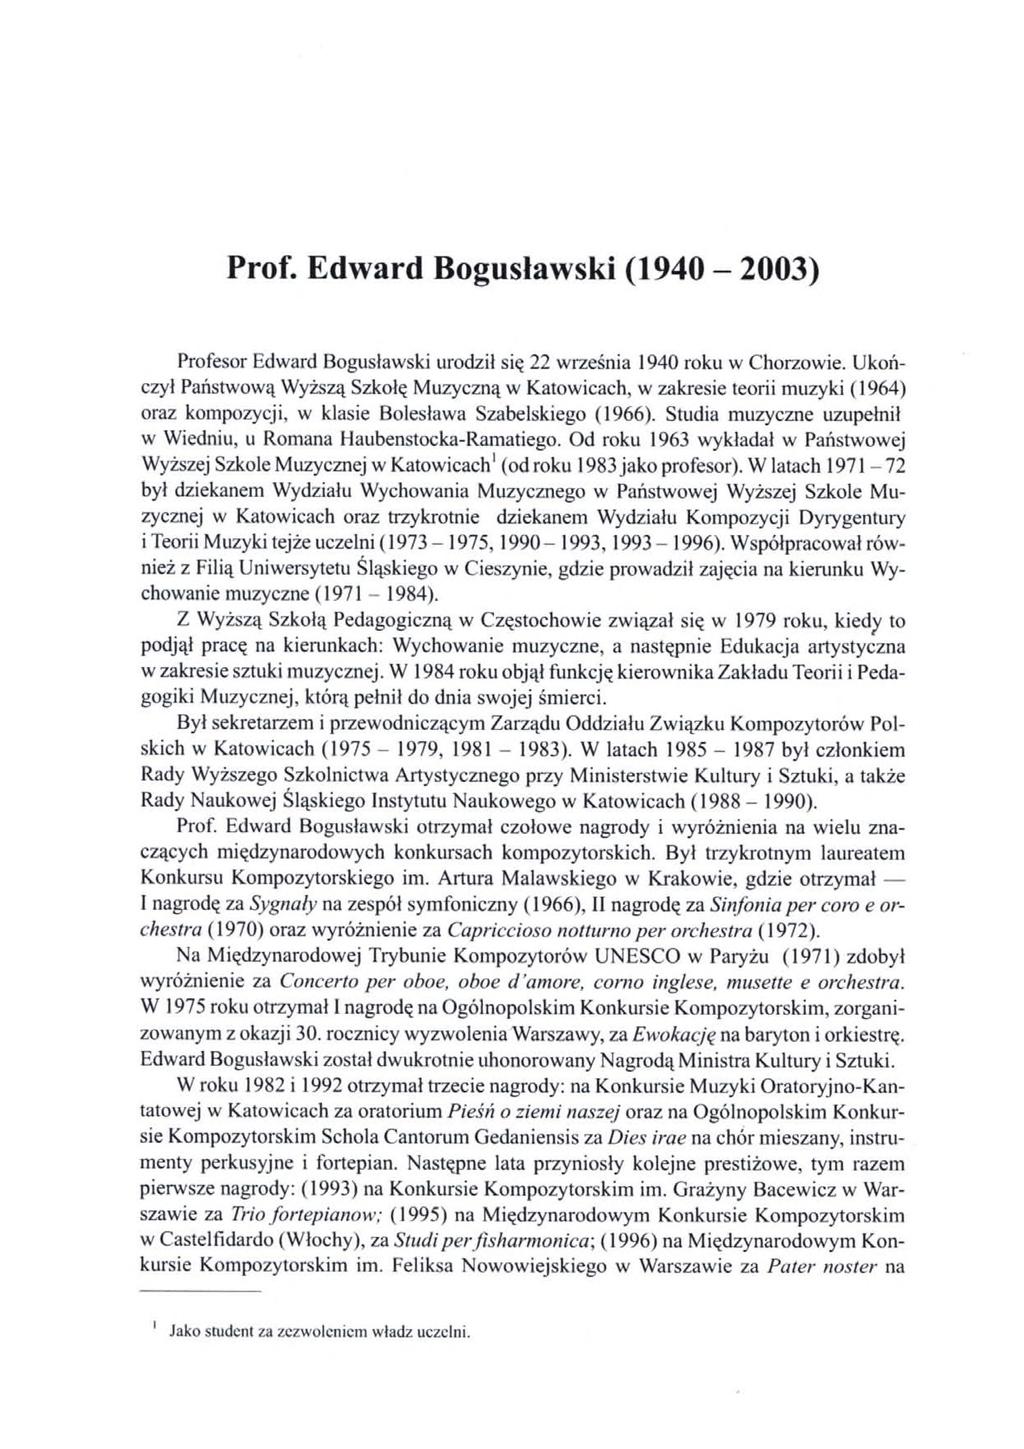 Prof. Edward Bogusławski (1940-2003) Profesor Edward Bogusławski urodził się 22 września 1940 roku w Chorzowie.